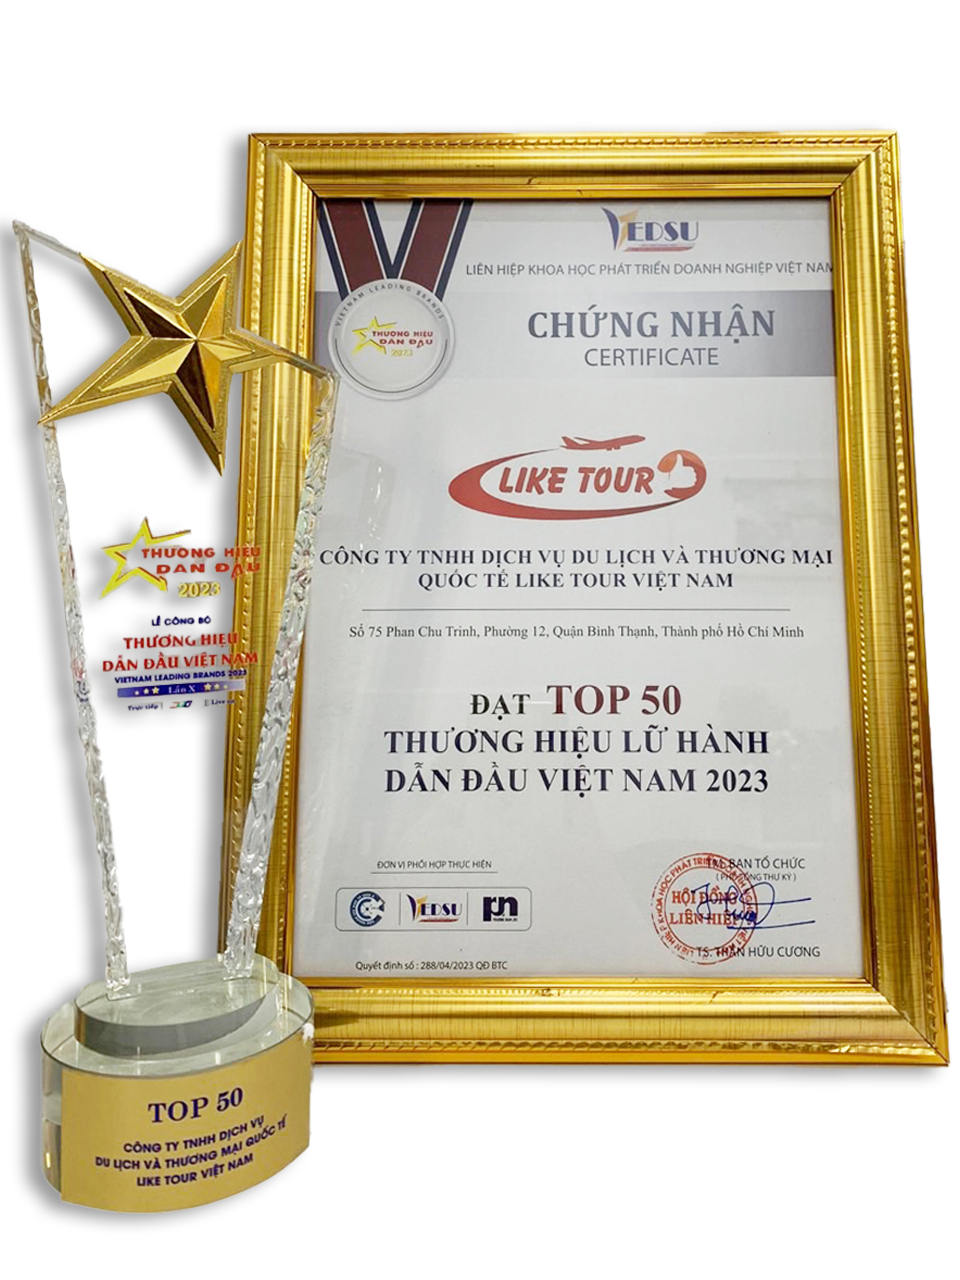 Top 50 thương hiệu lữ hành dần đầu Việt Nam